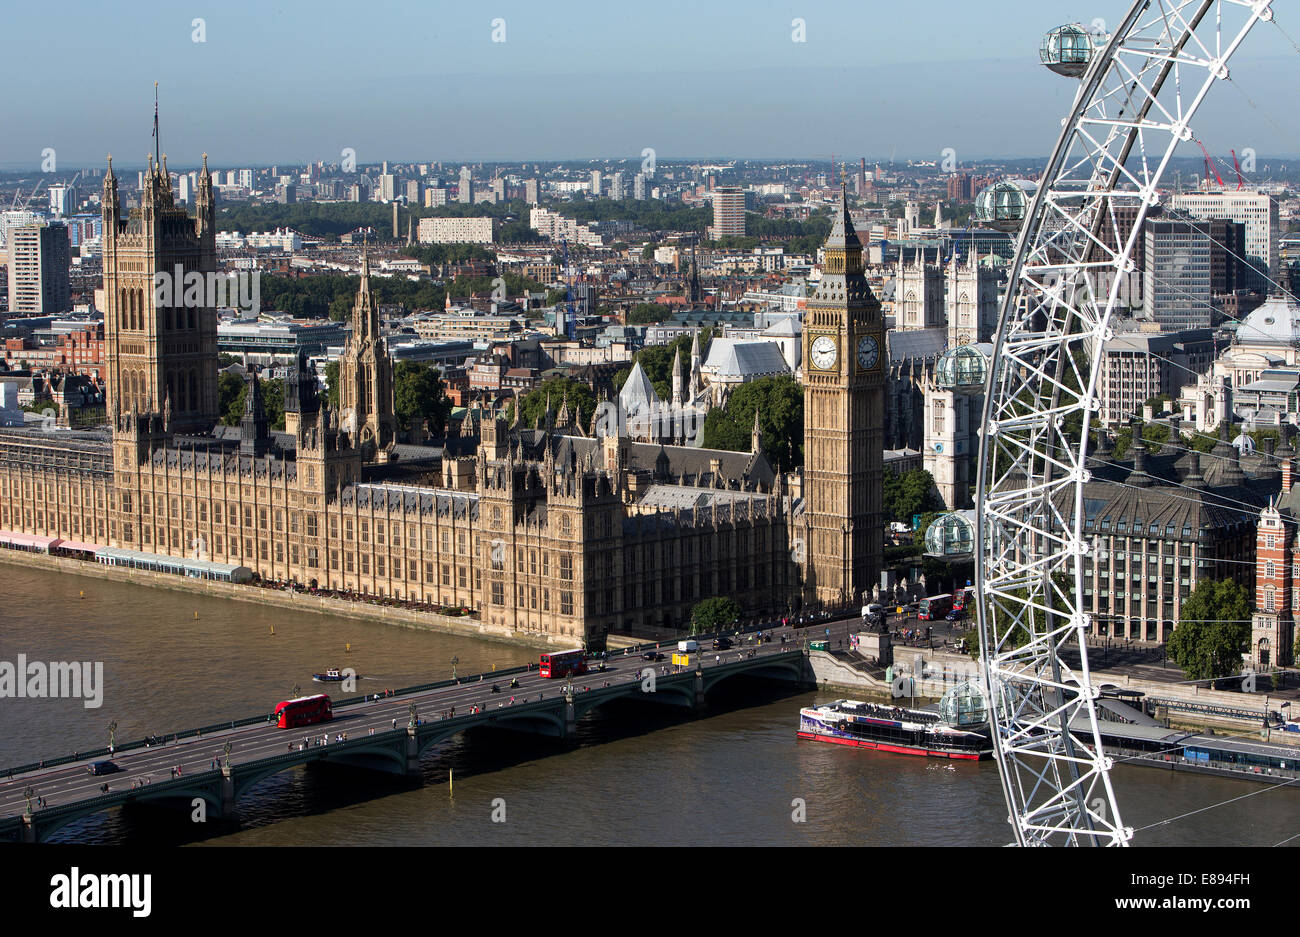 Las casas de Elizabeth Westminster-The Parliament-The Palacio de Torre con el Big Ben, la Cámara de los Comunes y la Cámara de los Lores Foto de stock